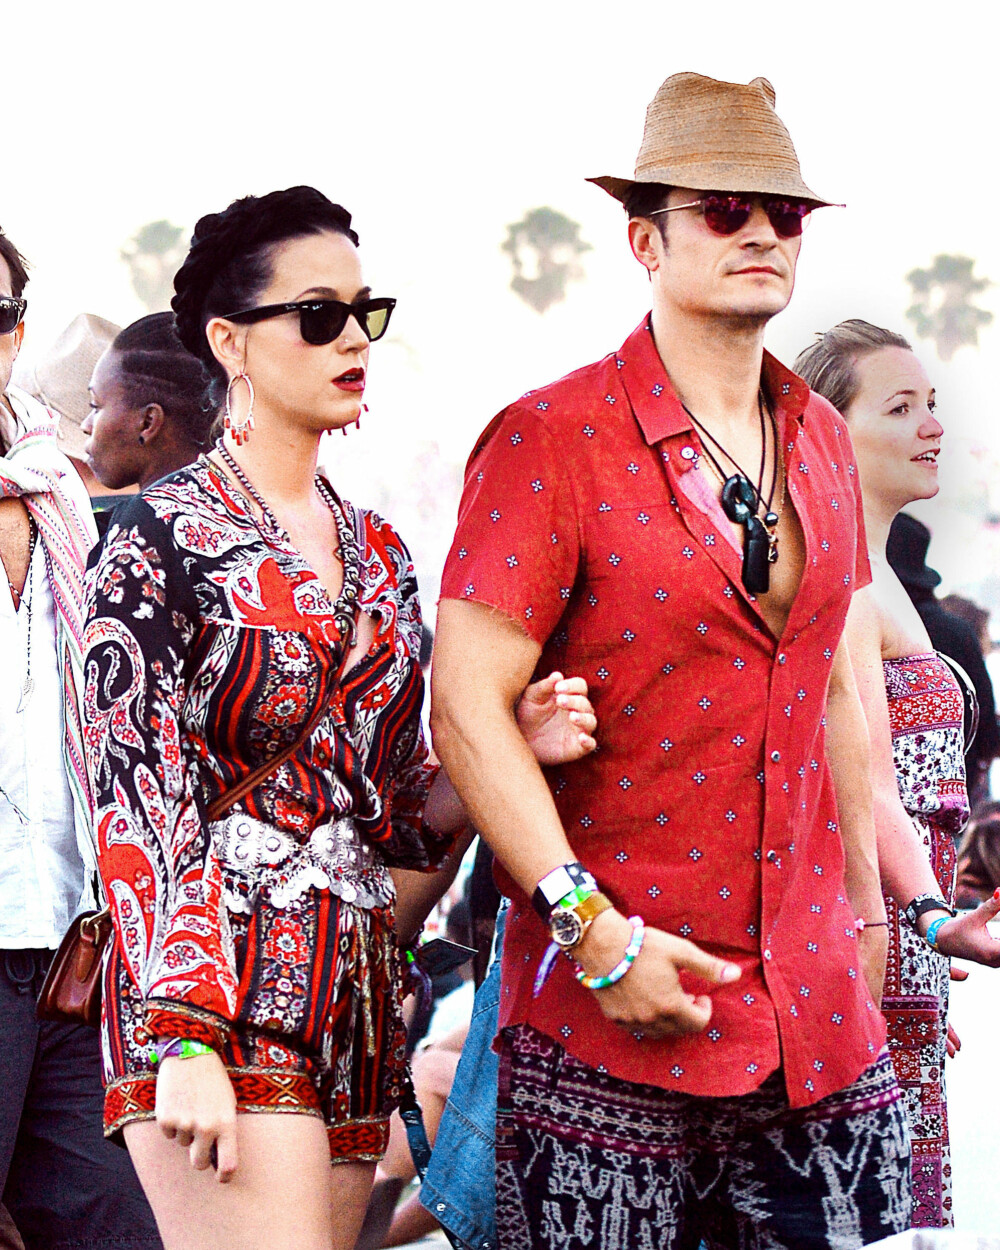 Her er Katy Perry og Orlando Bloom under Coachella i 2016